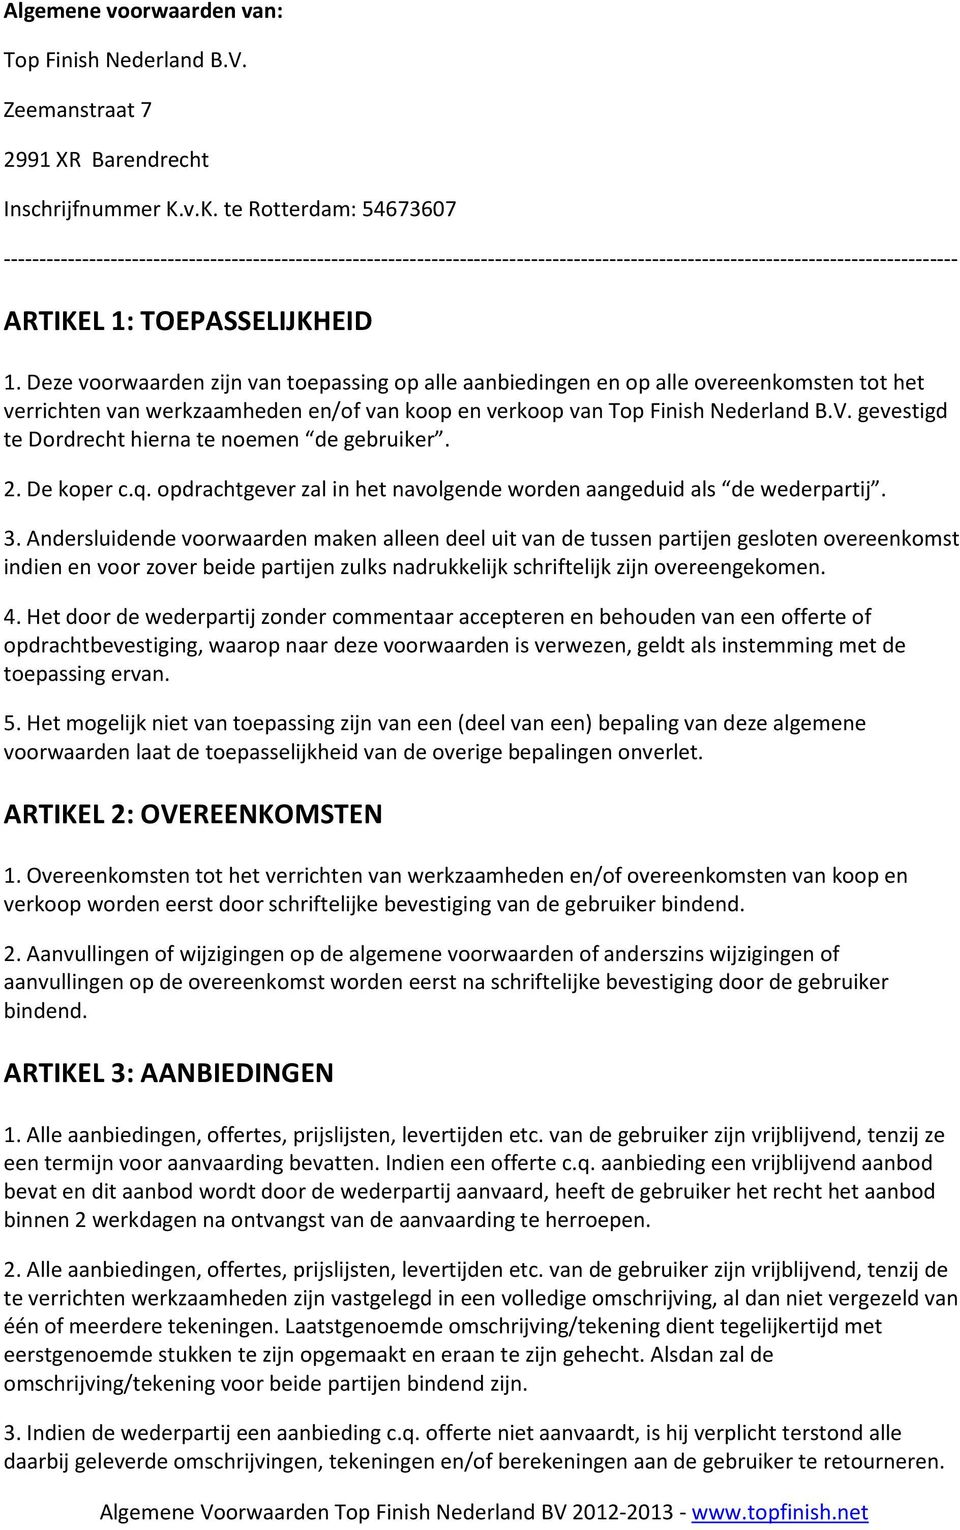 Deze voorwaarden zijn van toepassing op alle aanbiedingen en op alle overeenkomsten tot het verrichten van werkzaamheden en/of van koop en verkoop van Top Finish Nederland B.V.